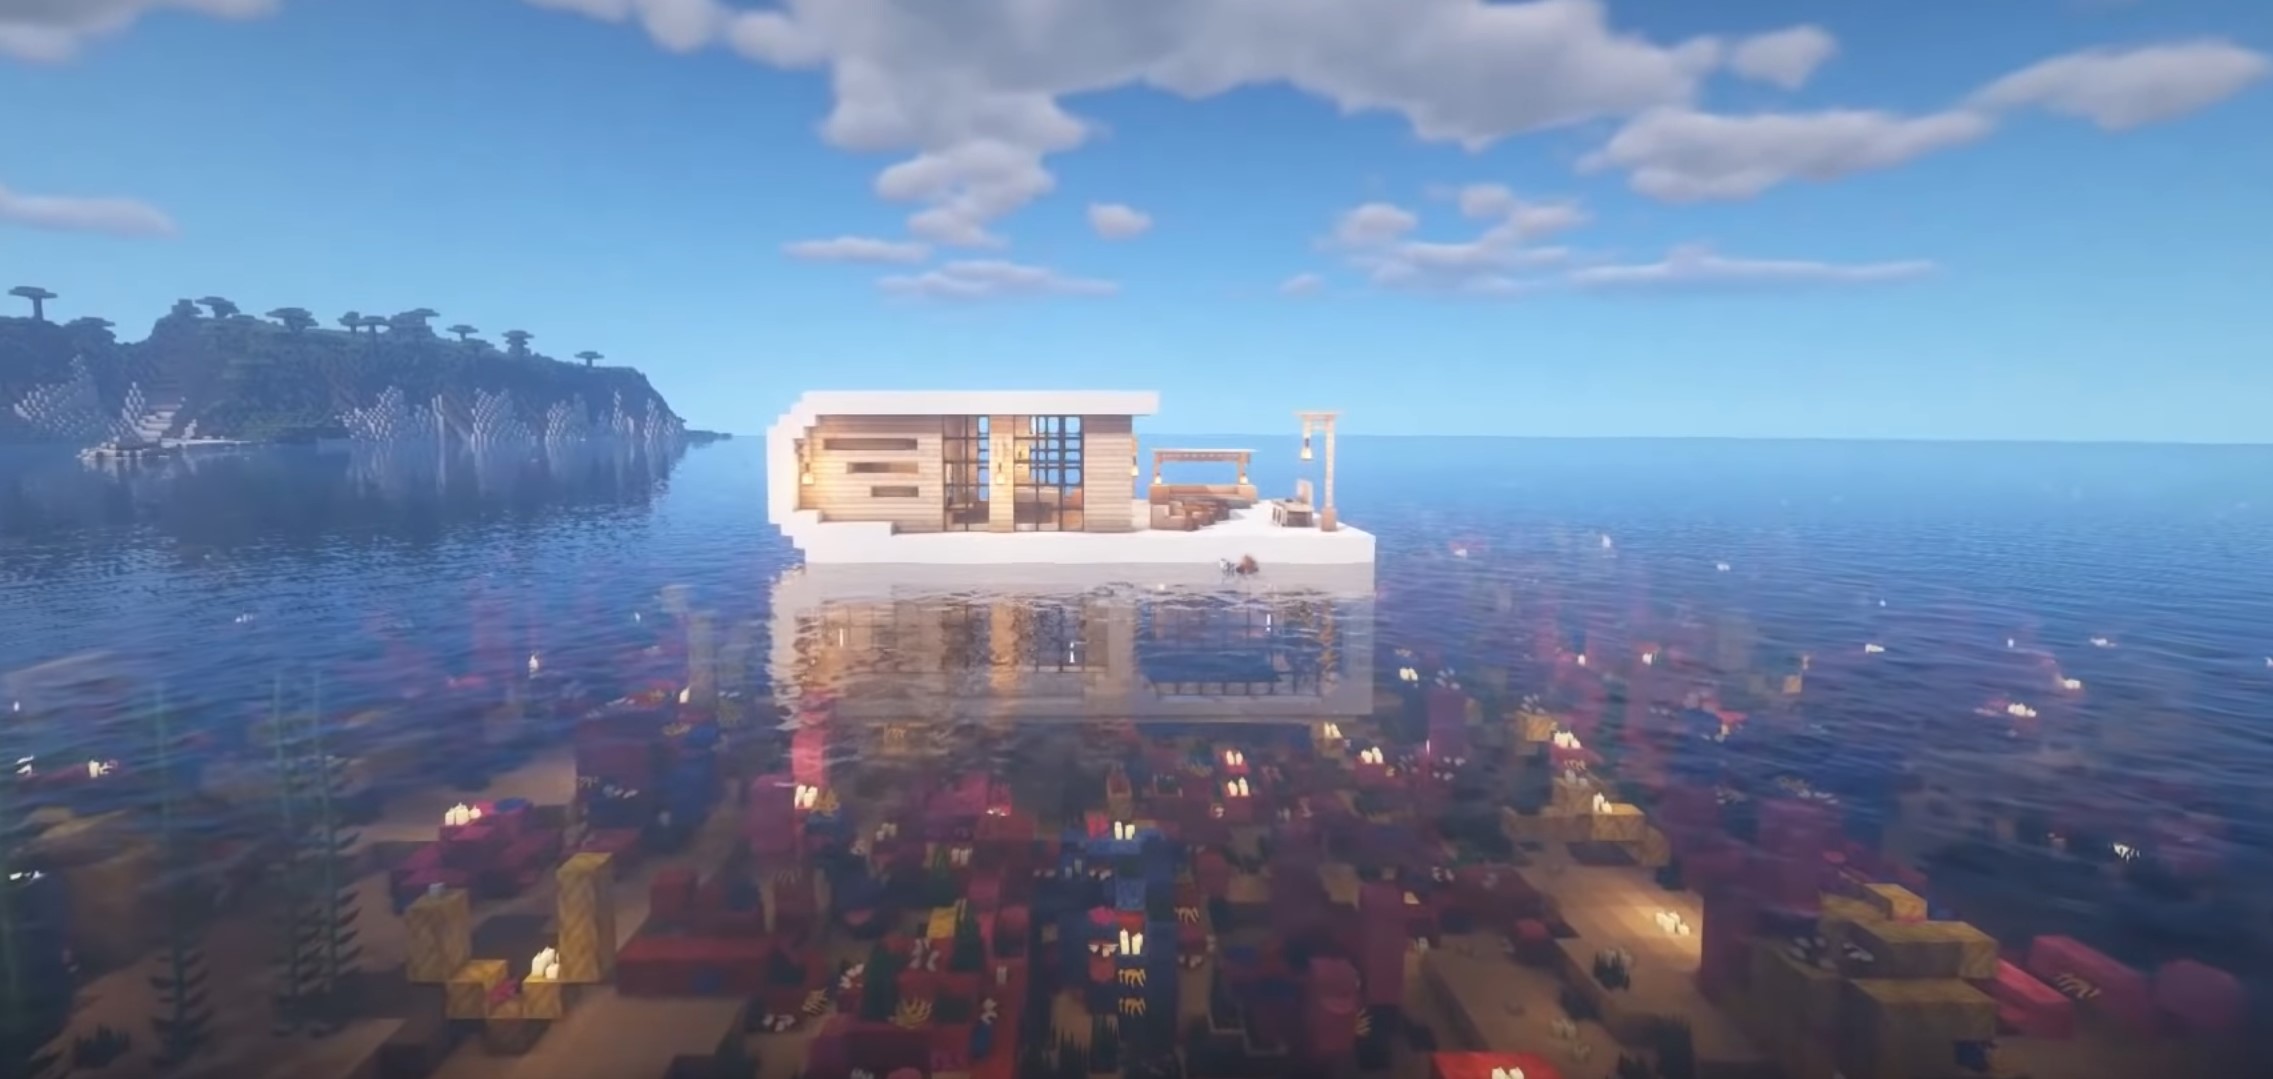 Minecraft Underwater Modern House idea